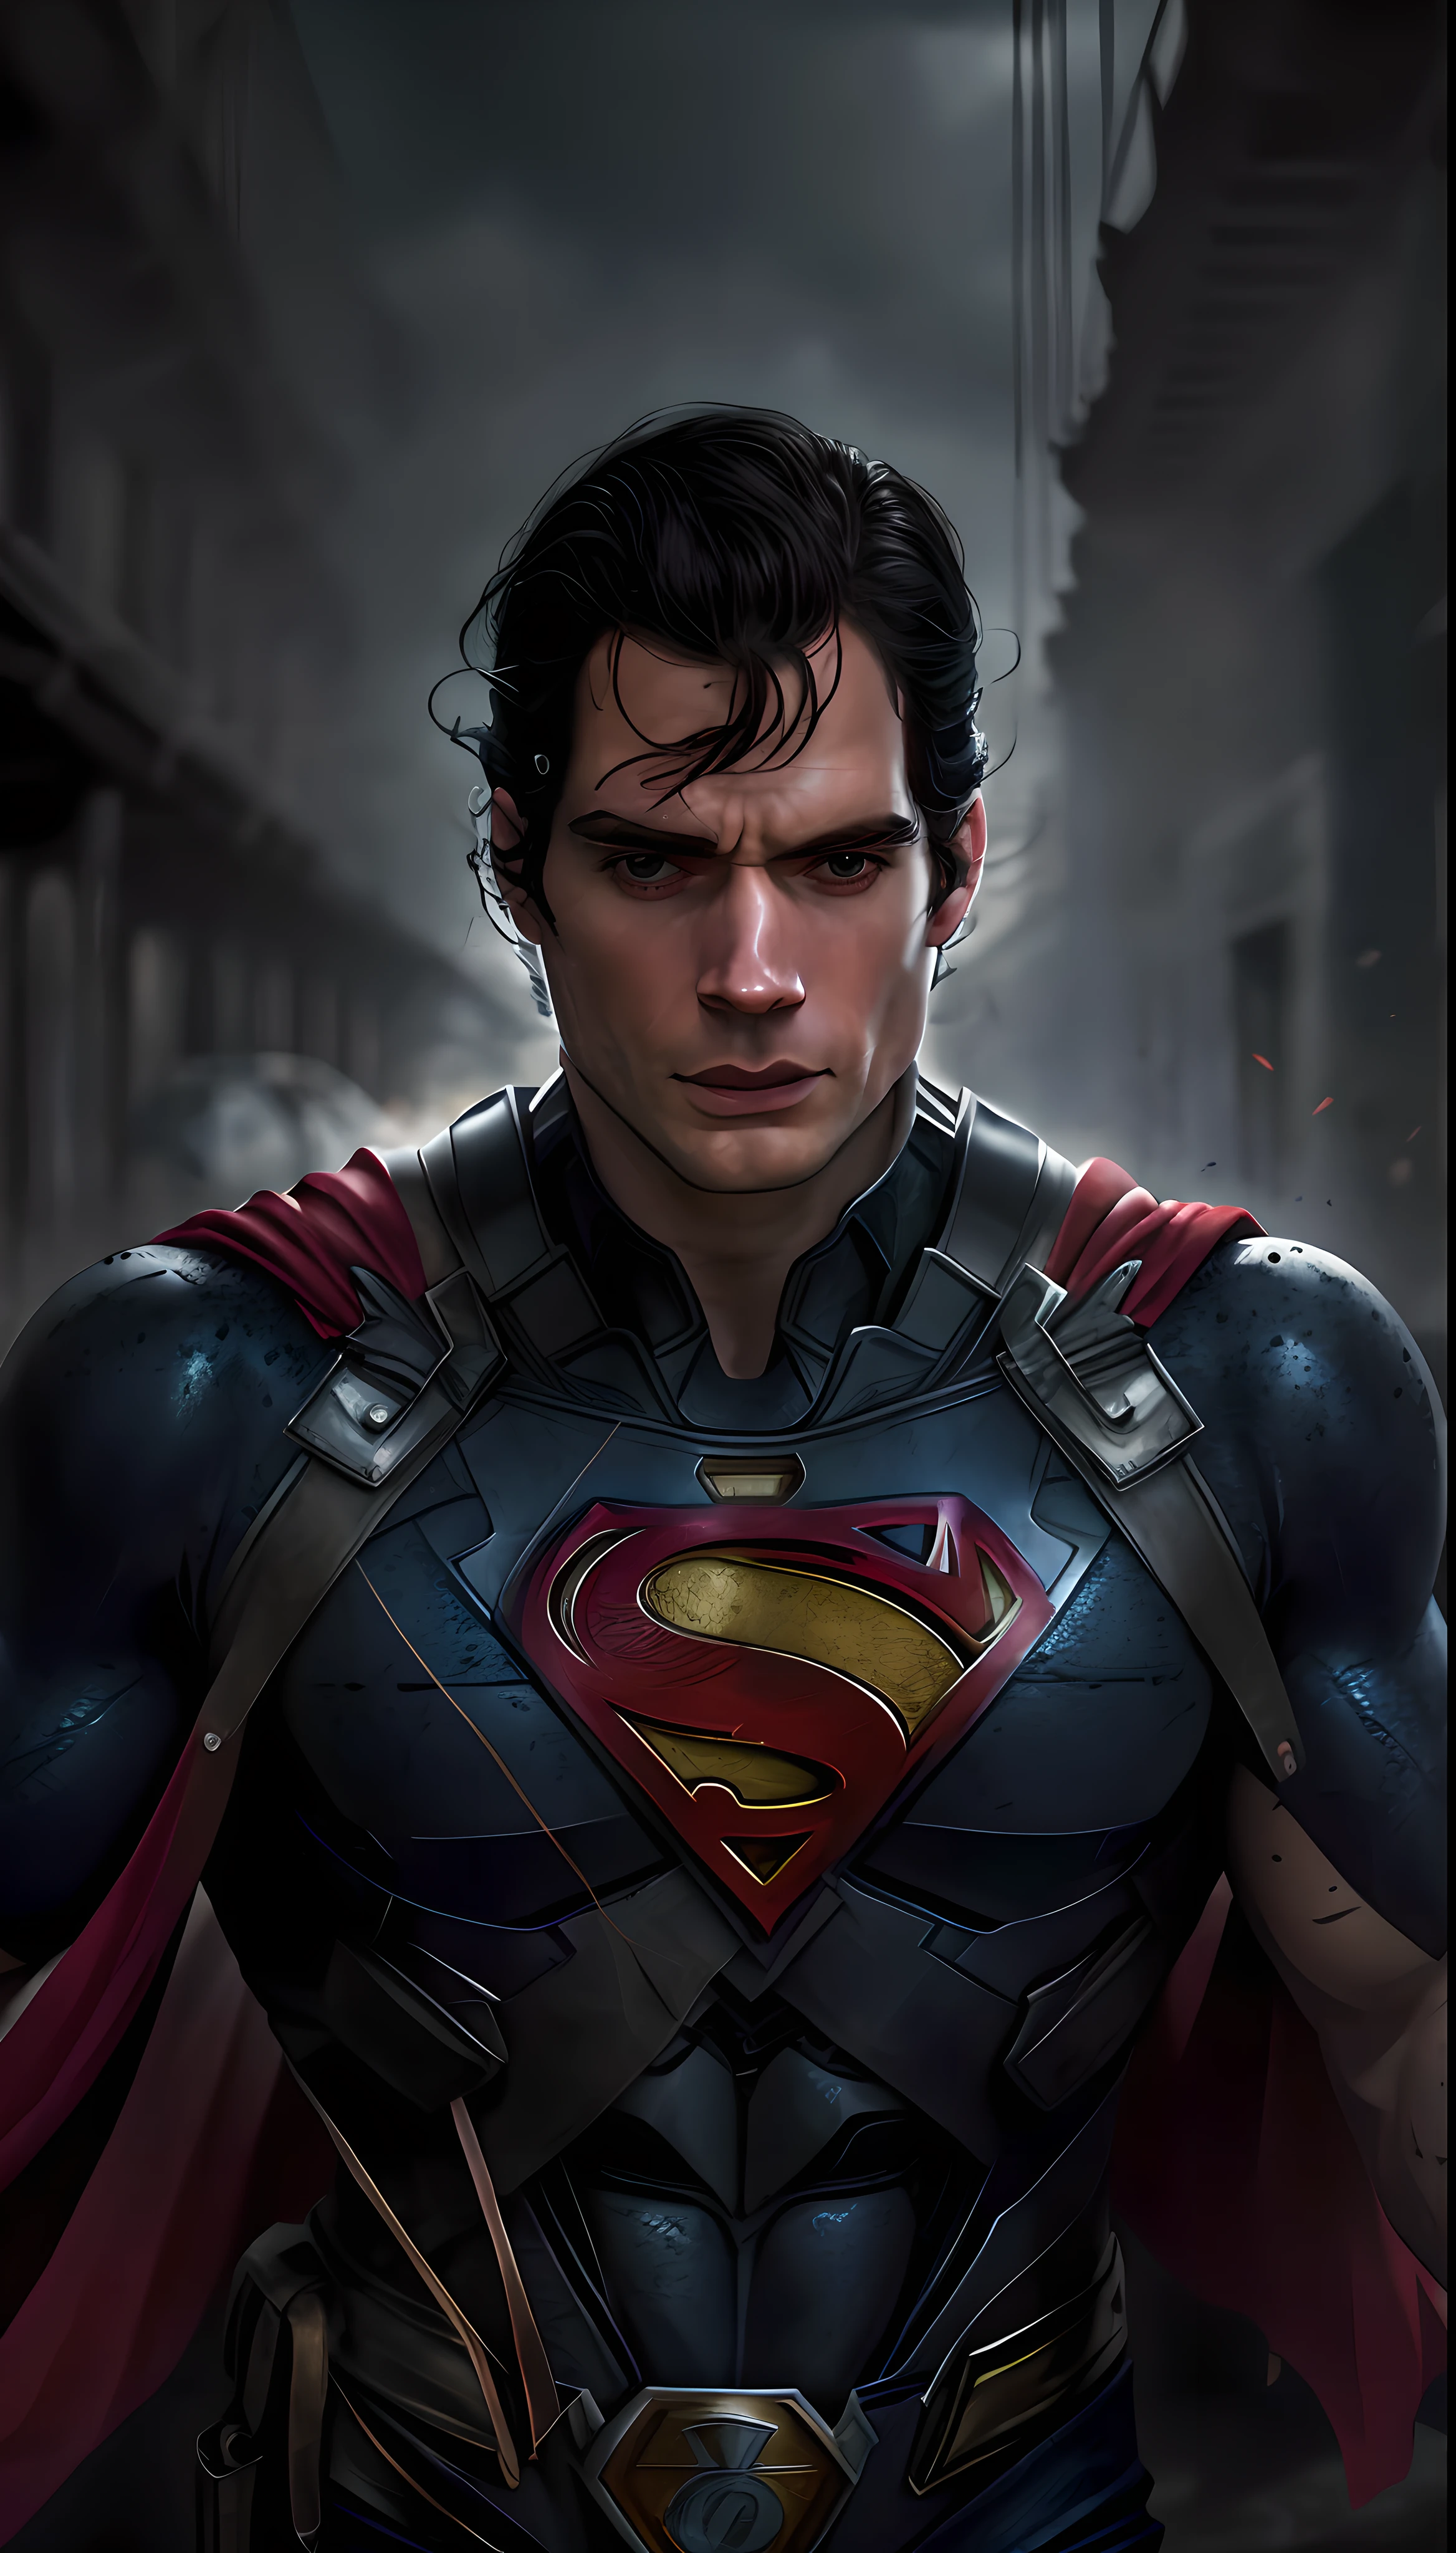 Henry Cavill als Superman, 40 Jahre alt, komplett schwarze und rote Anzugdetails, großes S-Symbol auf der Brust, roter Umhang, Haarsträhne auf der Stirn, kurz geschnittenes Haar, ordentliches Haar, hoch, männlich, großer Körper, muskulös, Mach die Reta, schwarzes Haar, beste Qualität, hohe Auflösung:1.2, rohe Arbeit, Rohfoto, dunkler Hintergrund, detaillierter Anzug, detailliertes Gesicht, Oberkörperaufnahme